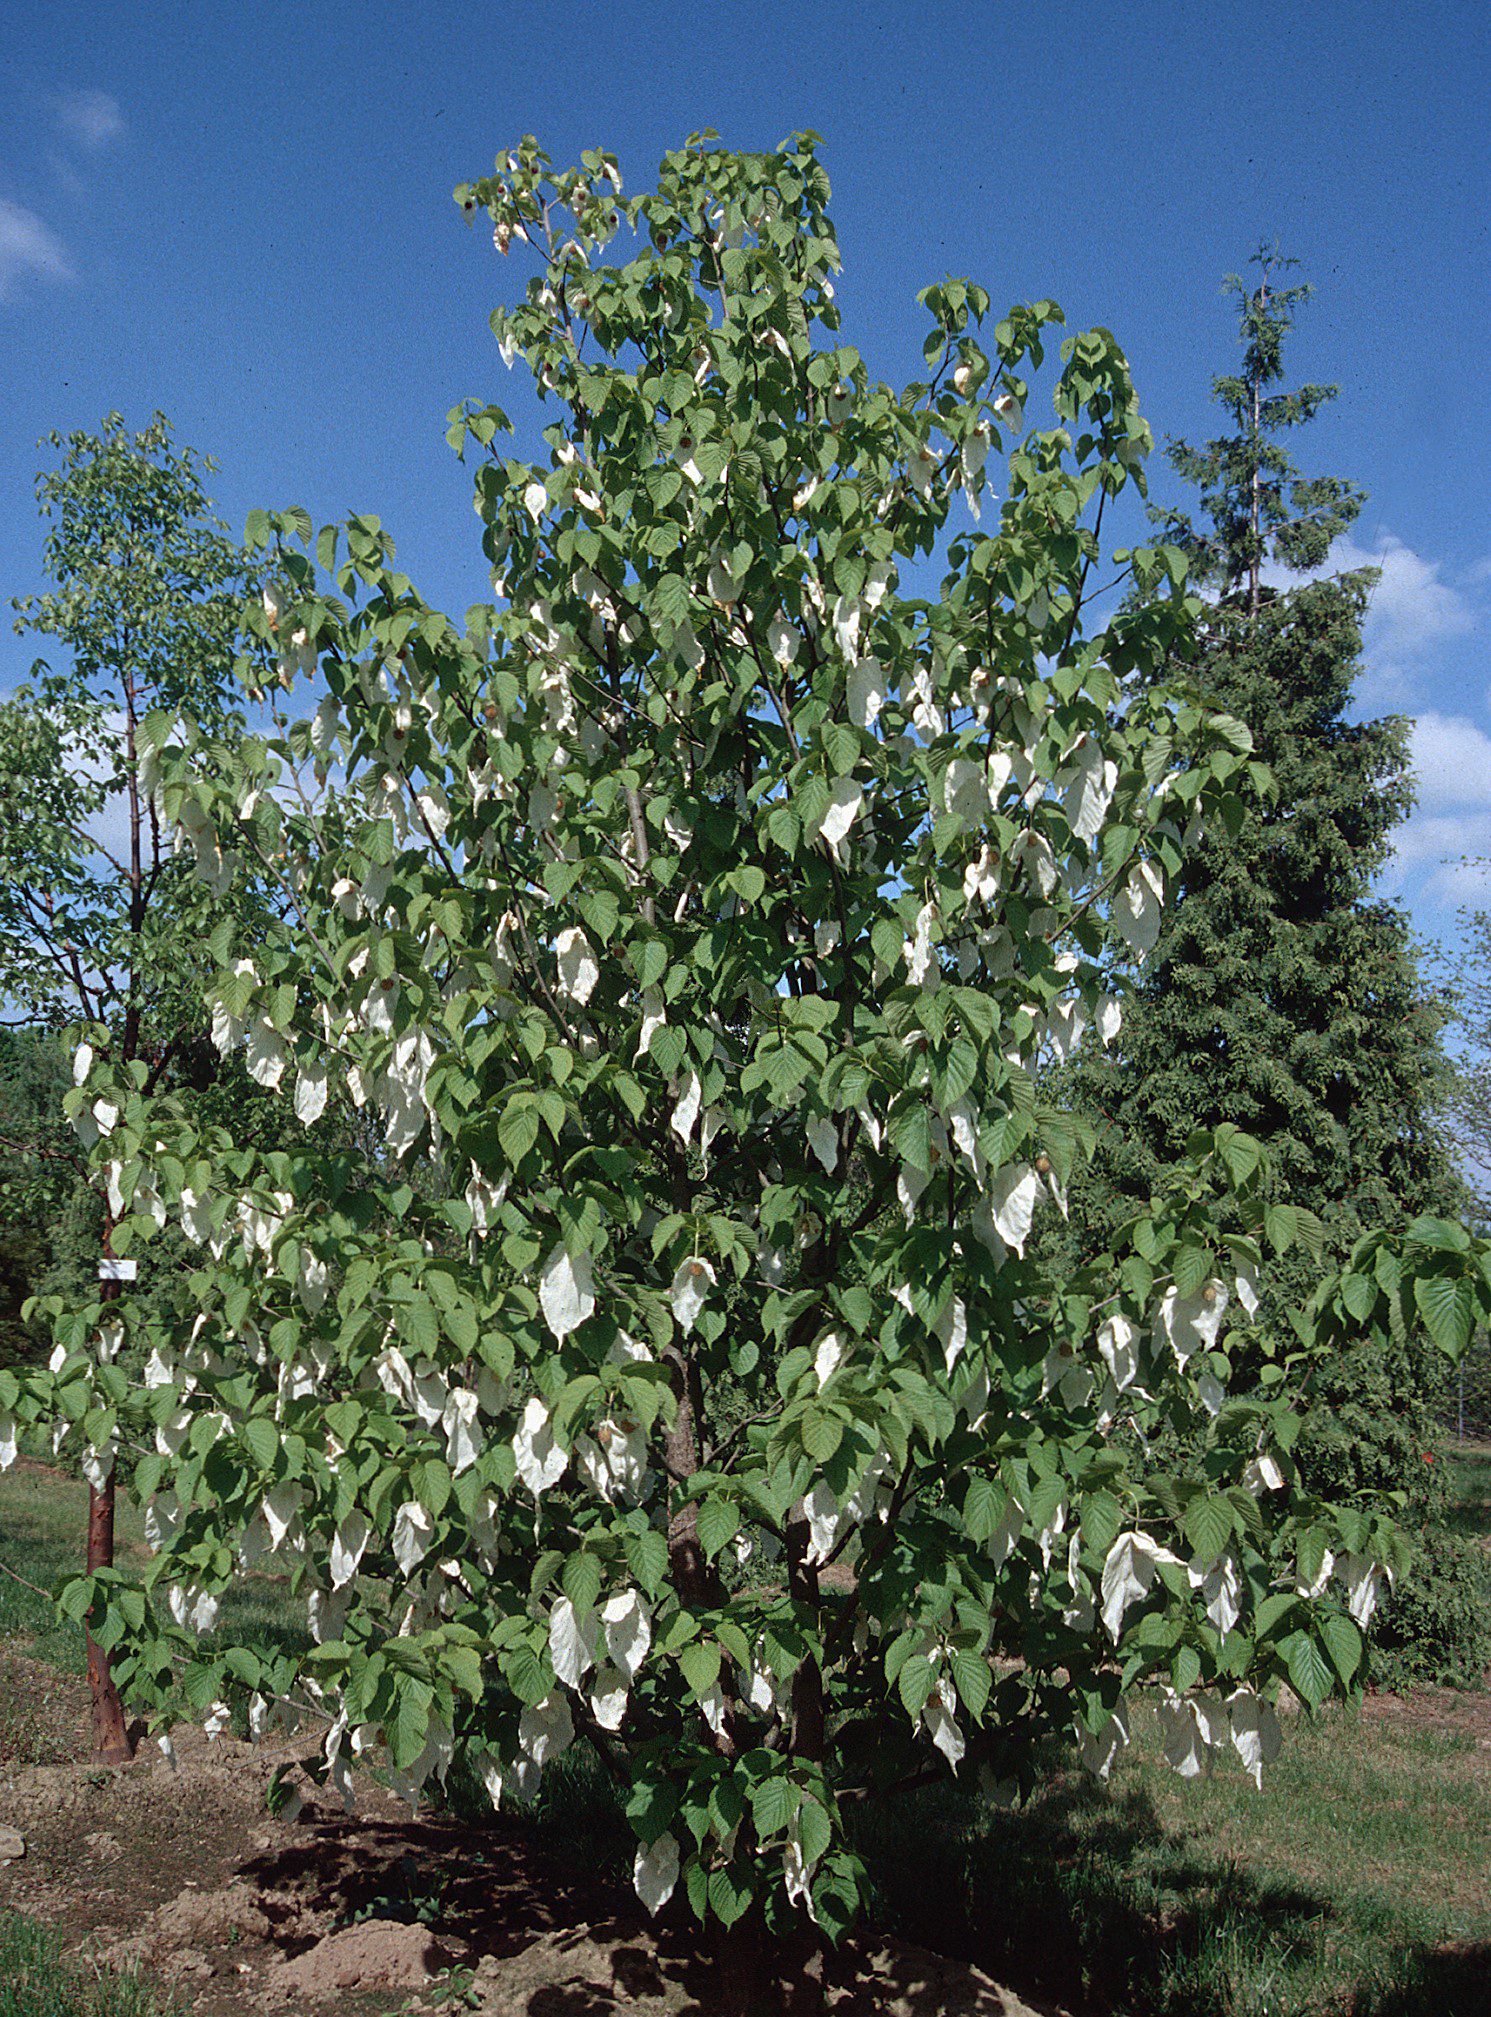 Handkerchief Tree